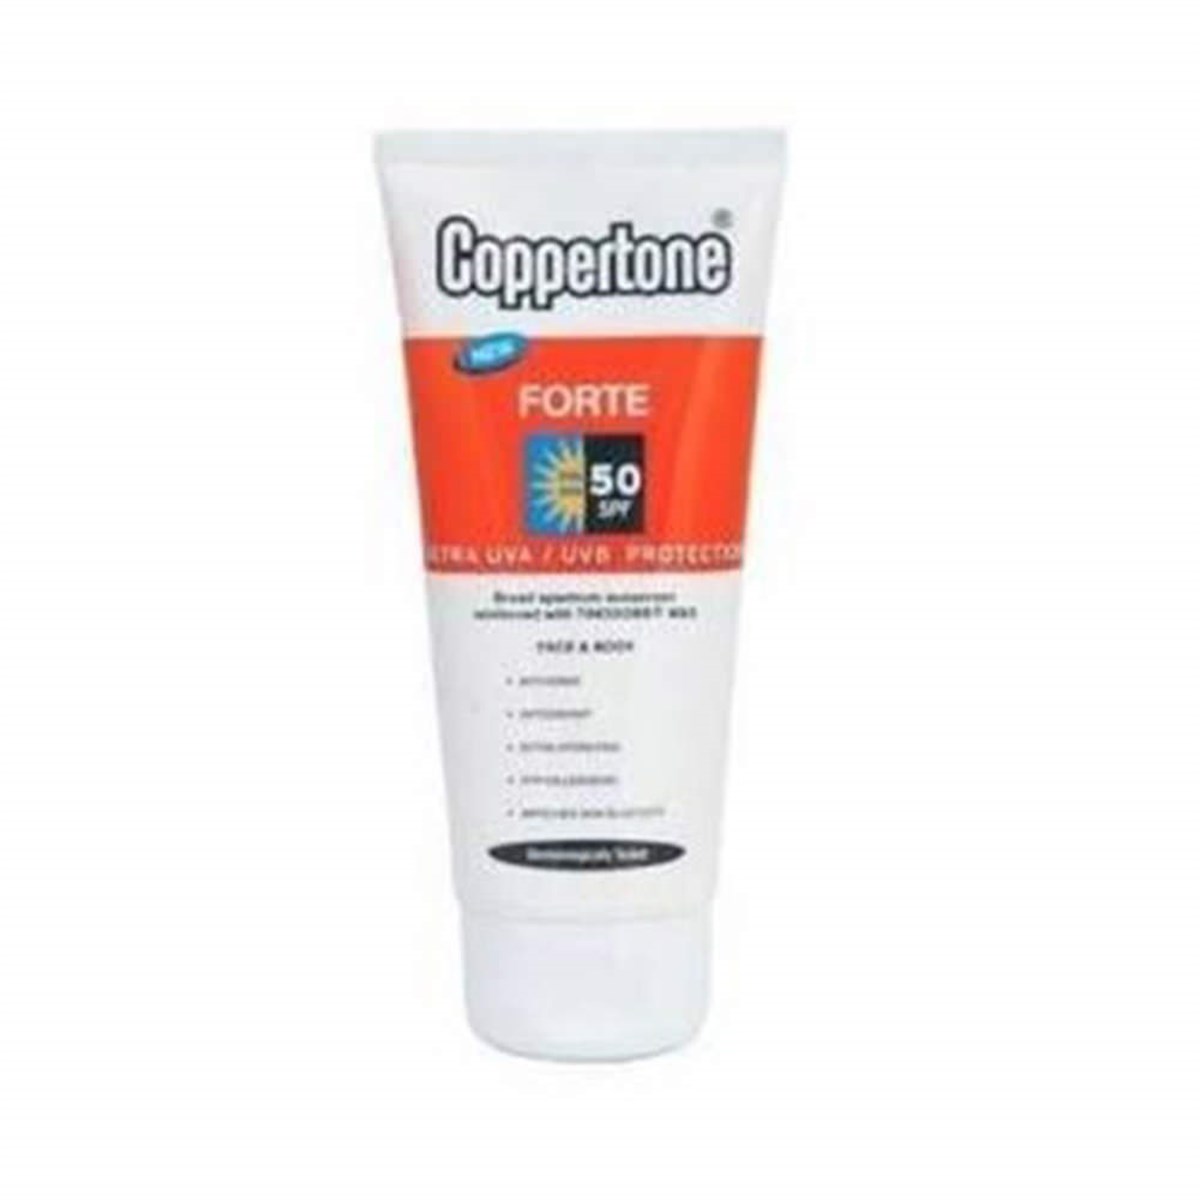 Coppertone Forte SPF 50 Krem 100 ml Yüz ve Vücut Ultra Güneş Koruyucu